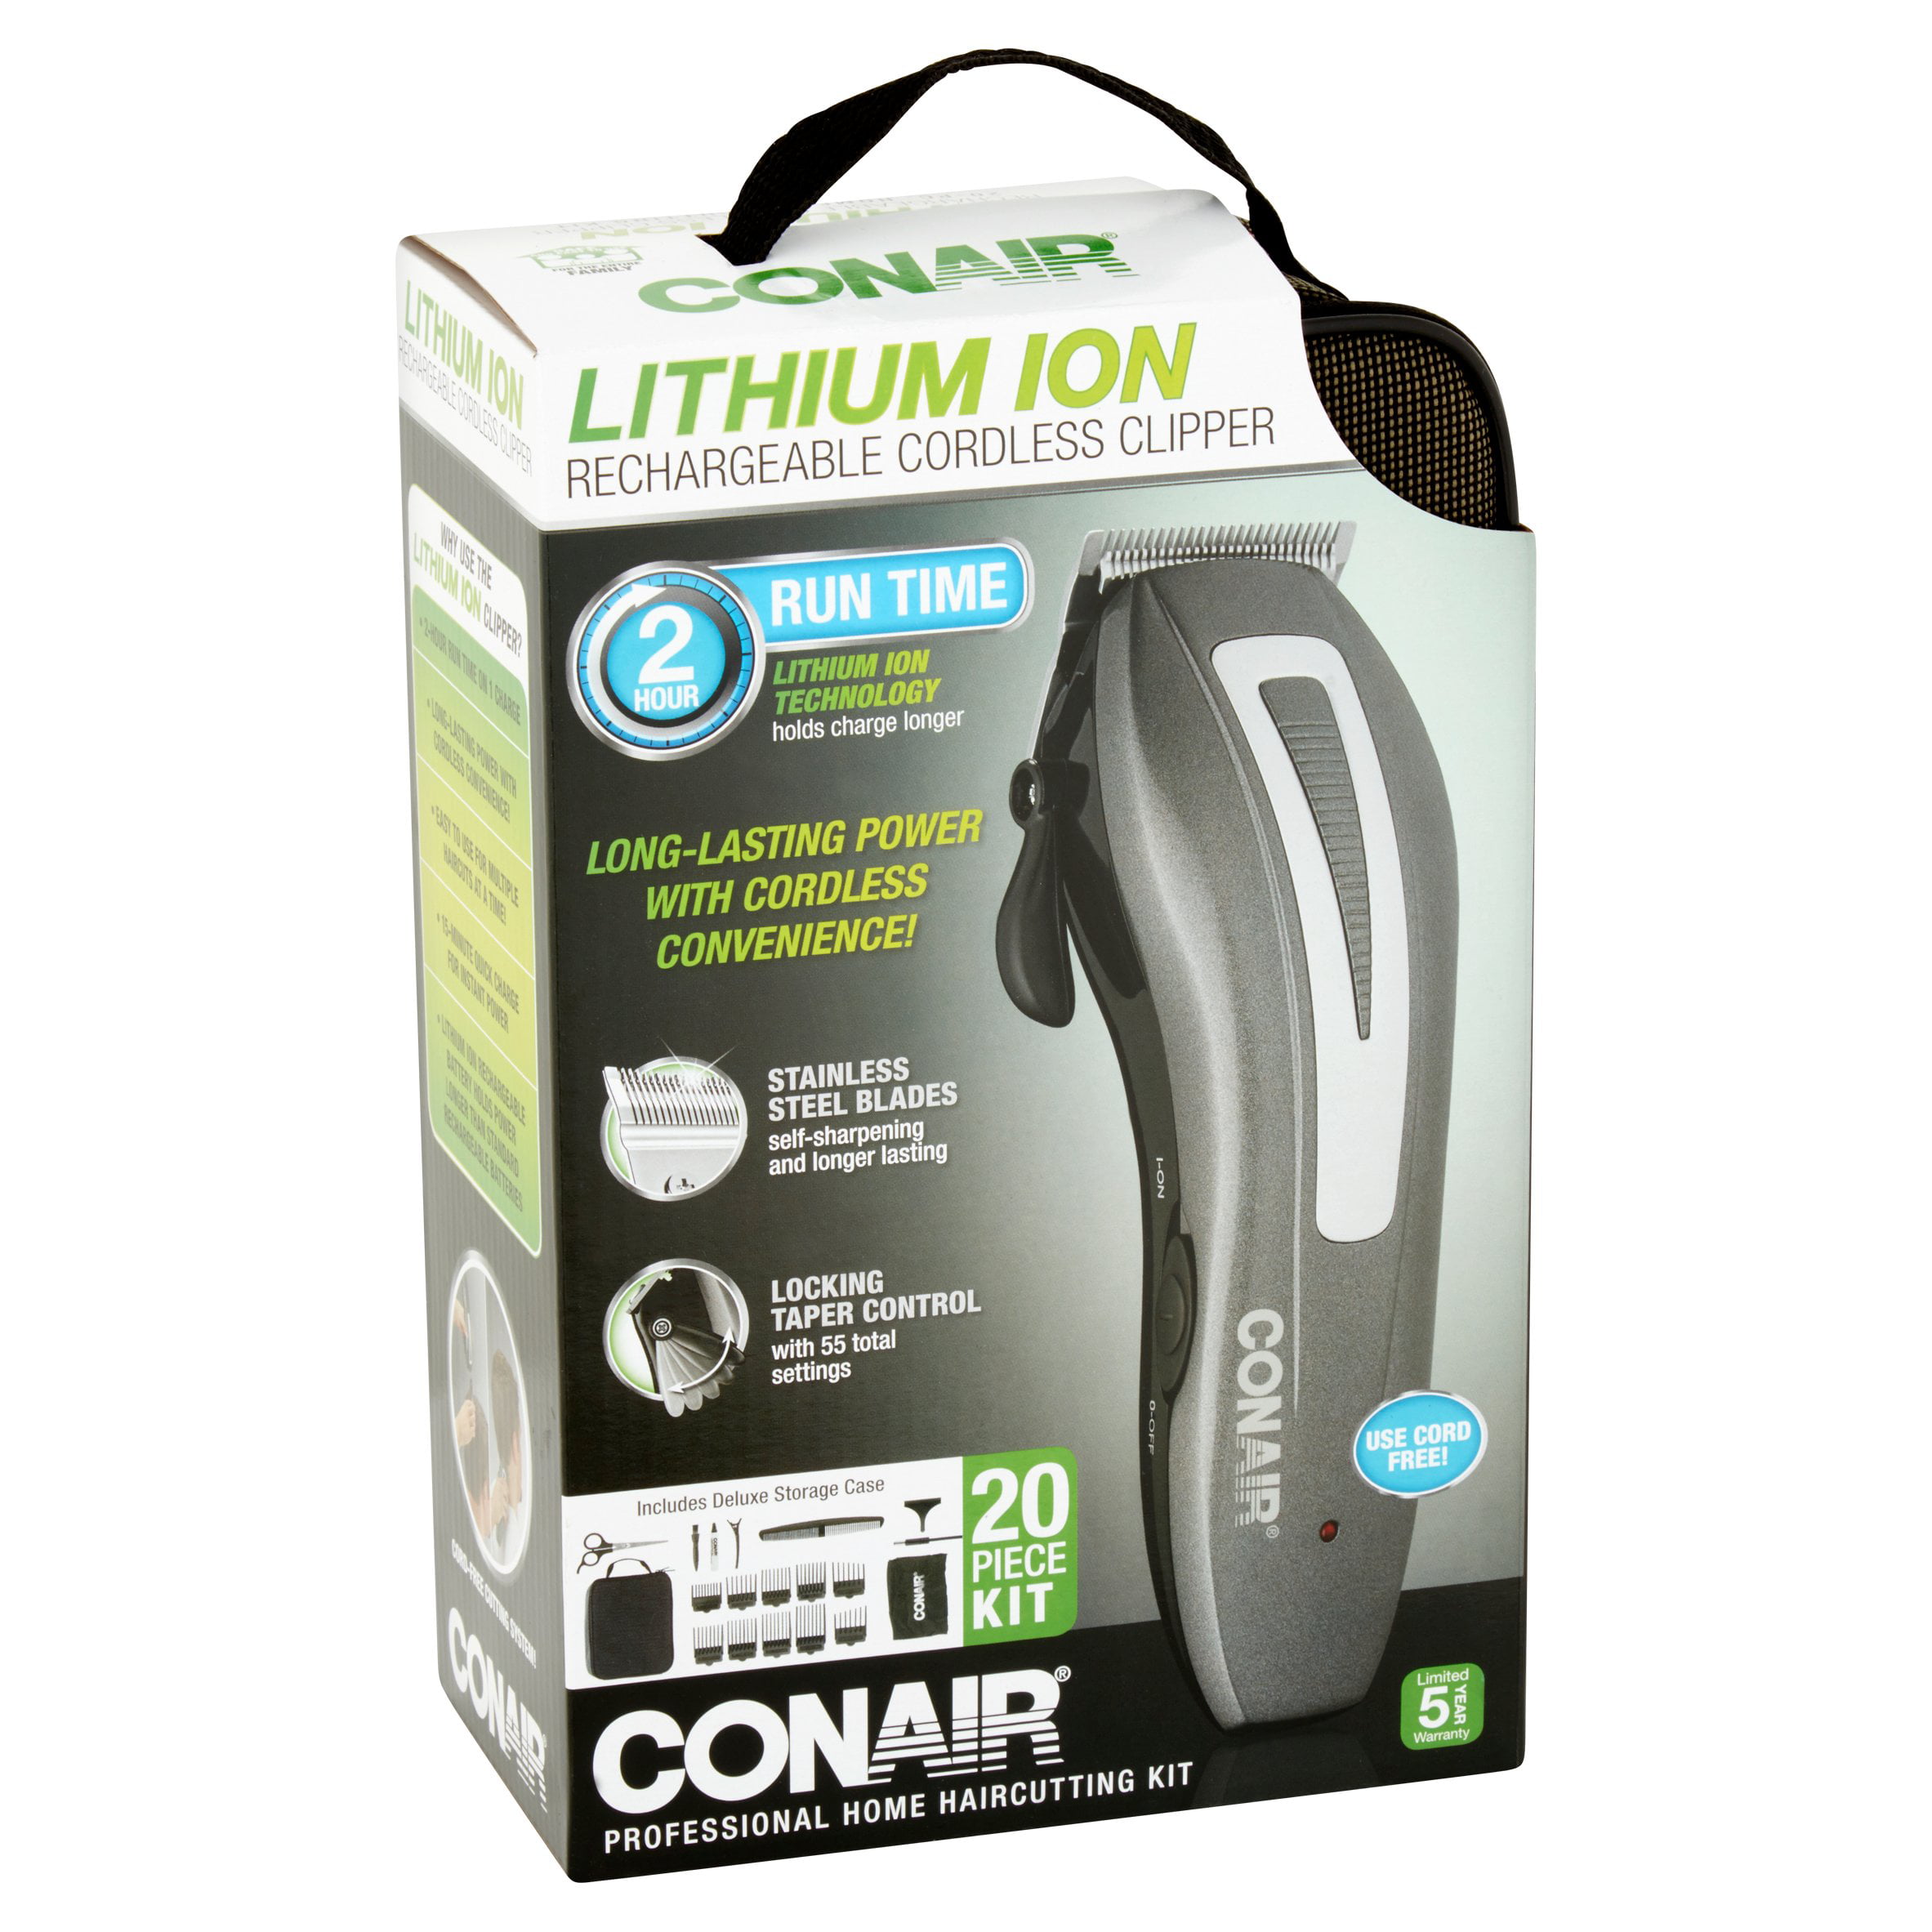 conair lithium ion